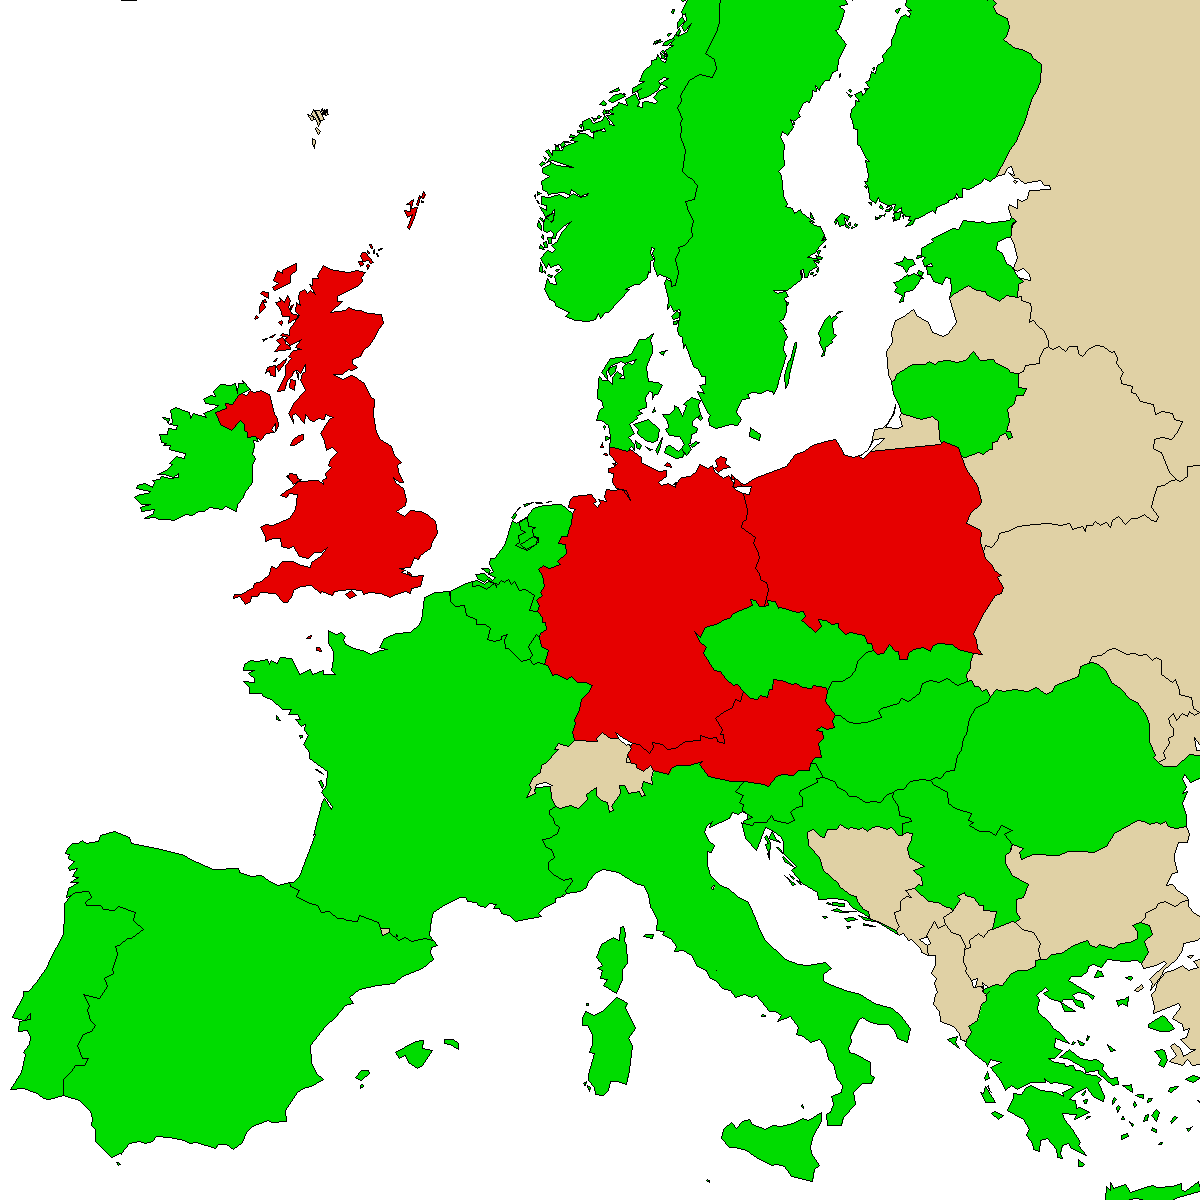 Legal Info Map für unser Produkt Mephedrene, Grün sind Länder ohne Verbot, Rot mit Verbot, Grau ist unbekannt